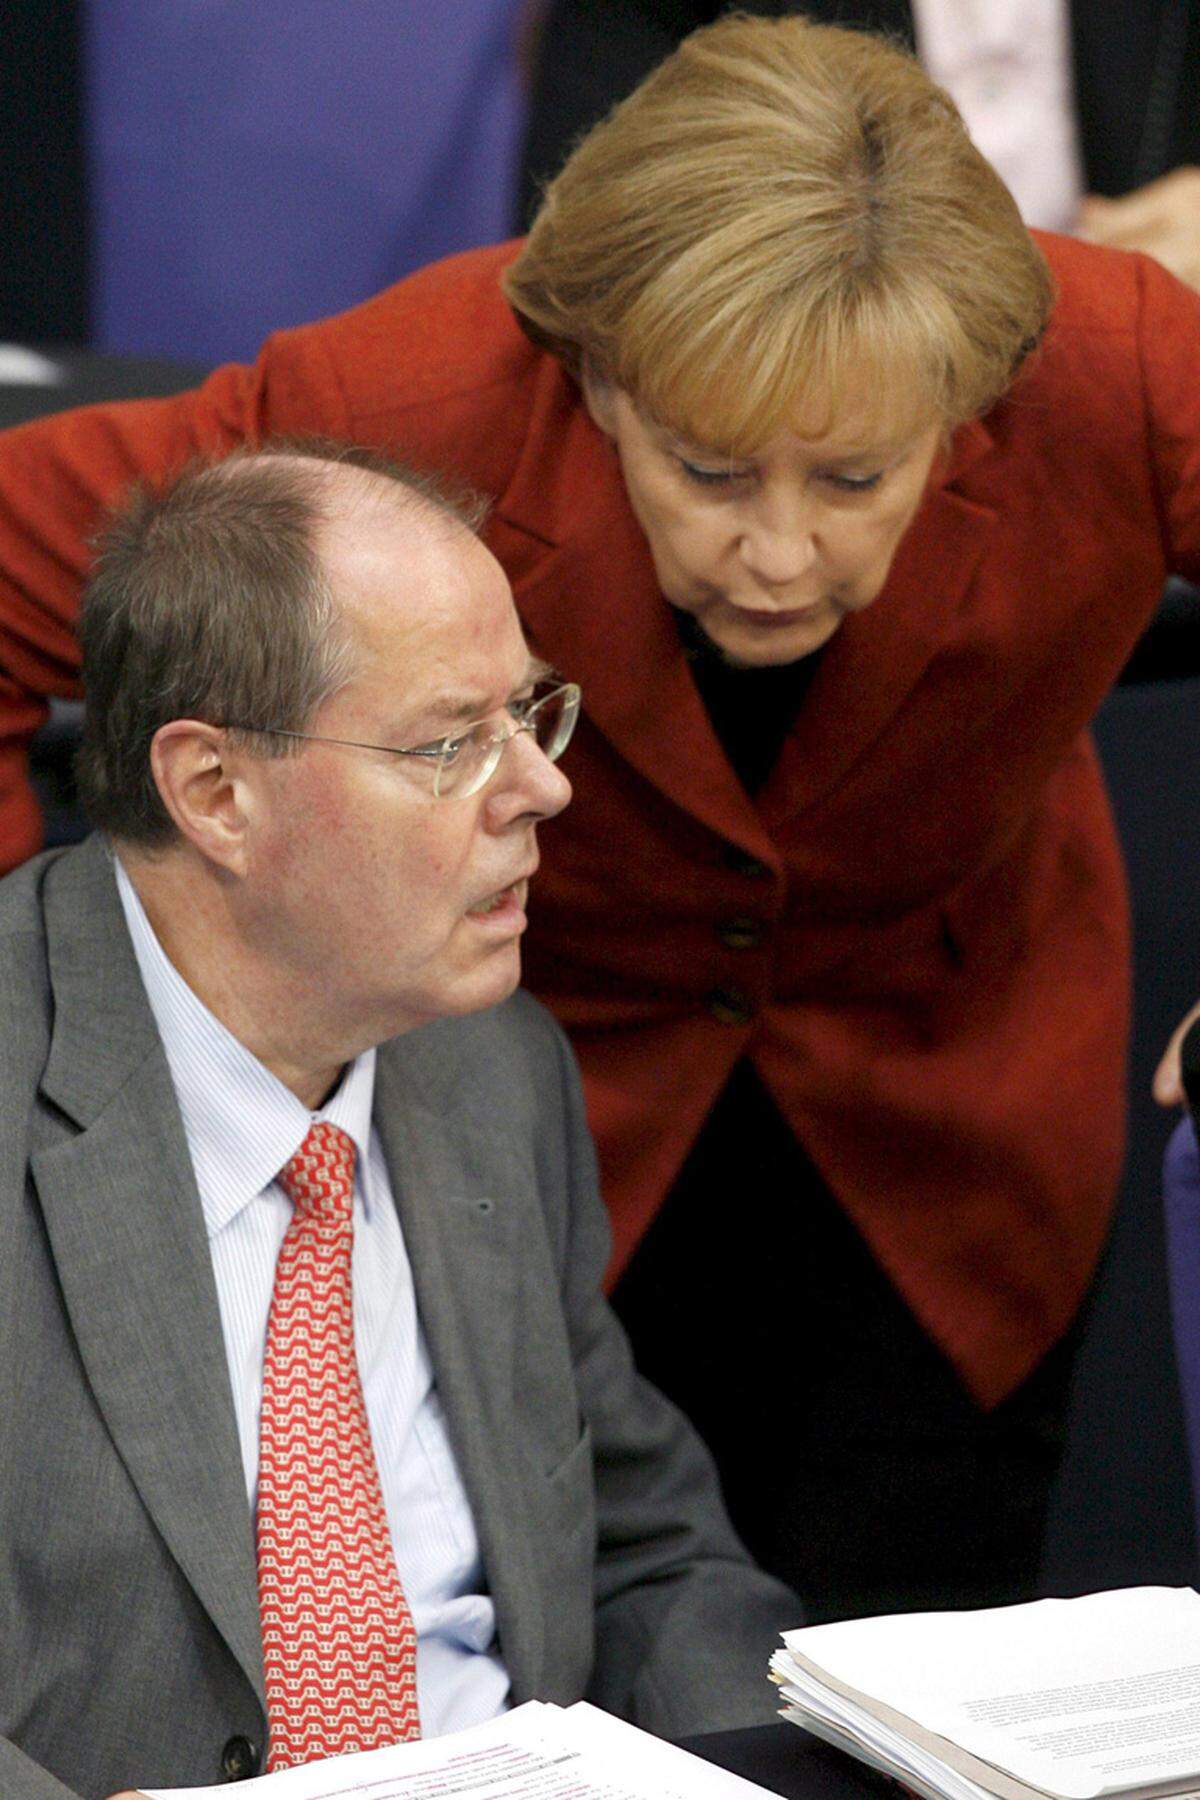 Bundestagswahl-Siegerin Angela Merkel holt Steinbrück in die Große Koalition, wo der Finanzminister nicht um markige Sprüche verlegen ist. Der Schweiz droht er im Steuerstreit vollmundig mit der "Kavallerie", Österreich vergleicht er mit "Ouagadogou". Dann blickt Steinbrück in den "Abgrund", wie er später selbst sagen wird. Im Tandem mit Merkel muss er Deutschland durch die Finanzkrise manövrieren. In einem denkwürdigen Auftritt treten beide im Oktober 2008 vor die Presse und erklären, dass die Sparbuch-Einlagen der Deutschen gesichert seien.